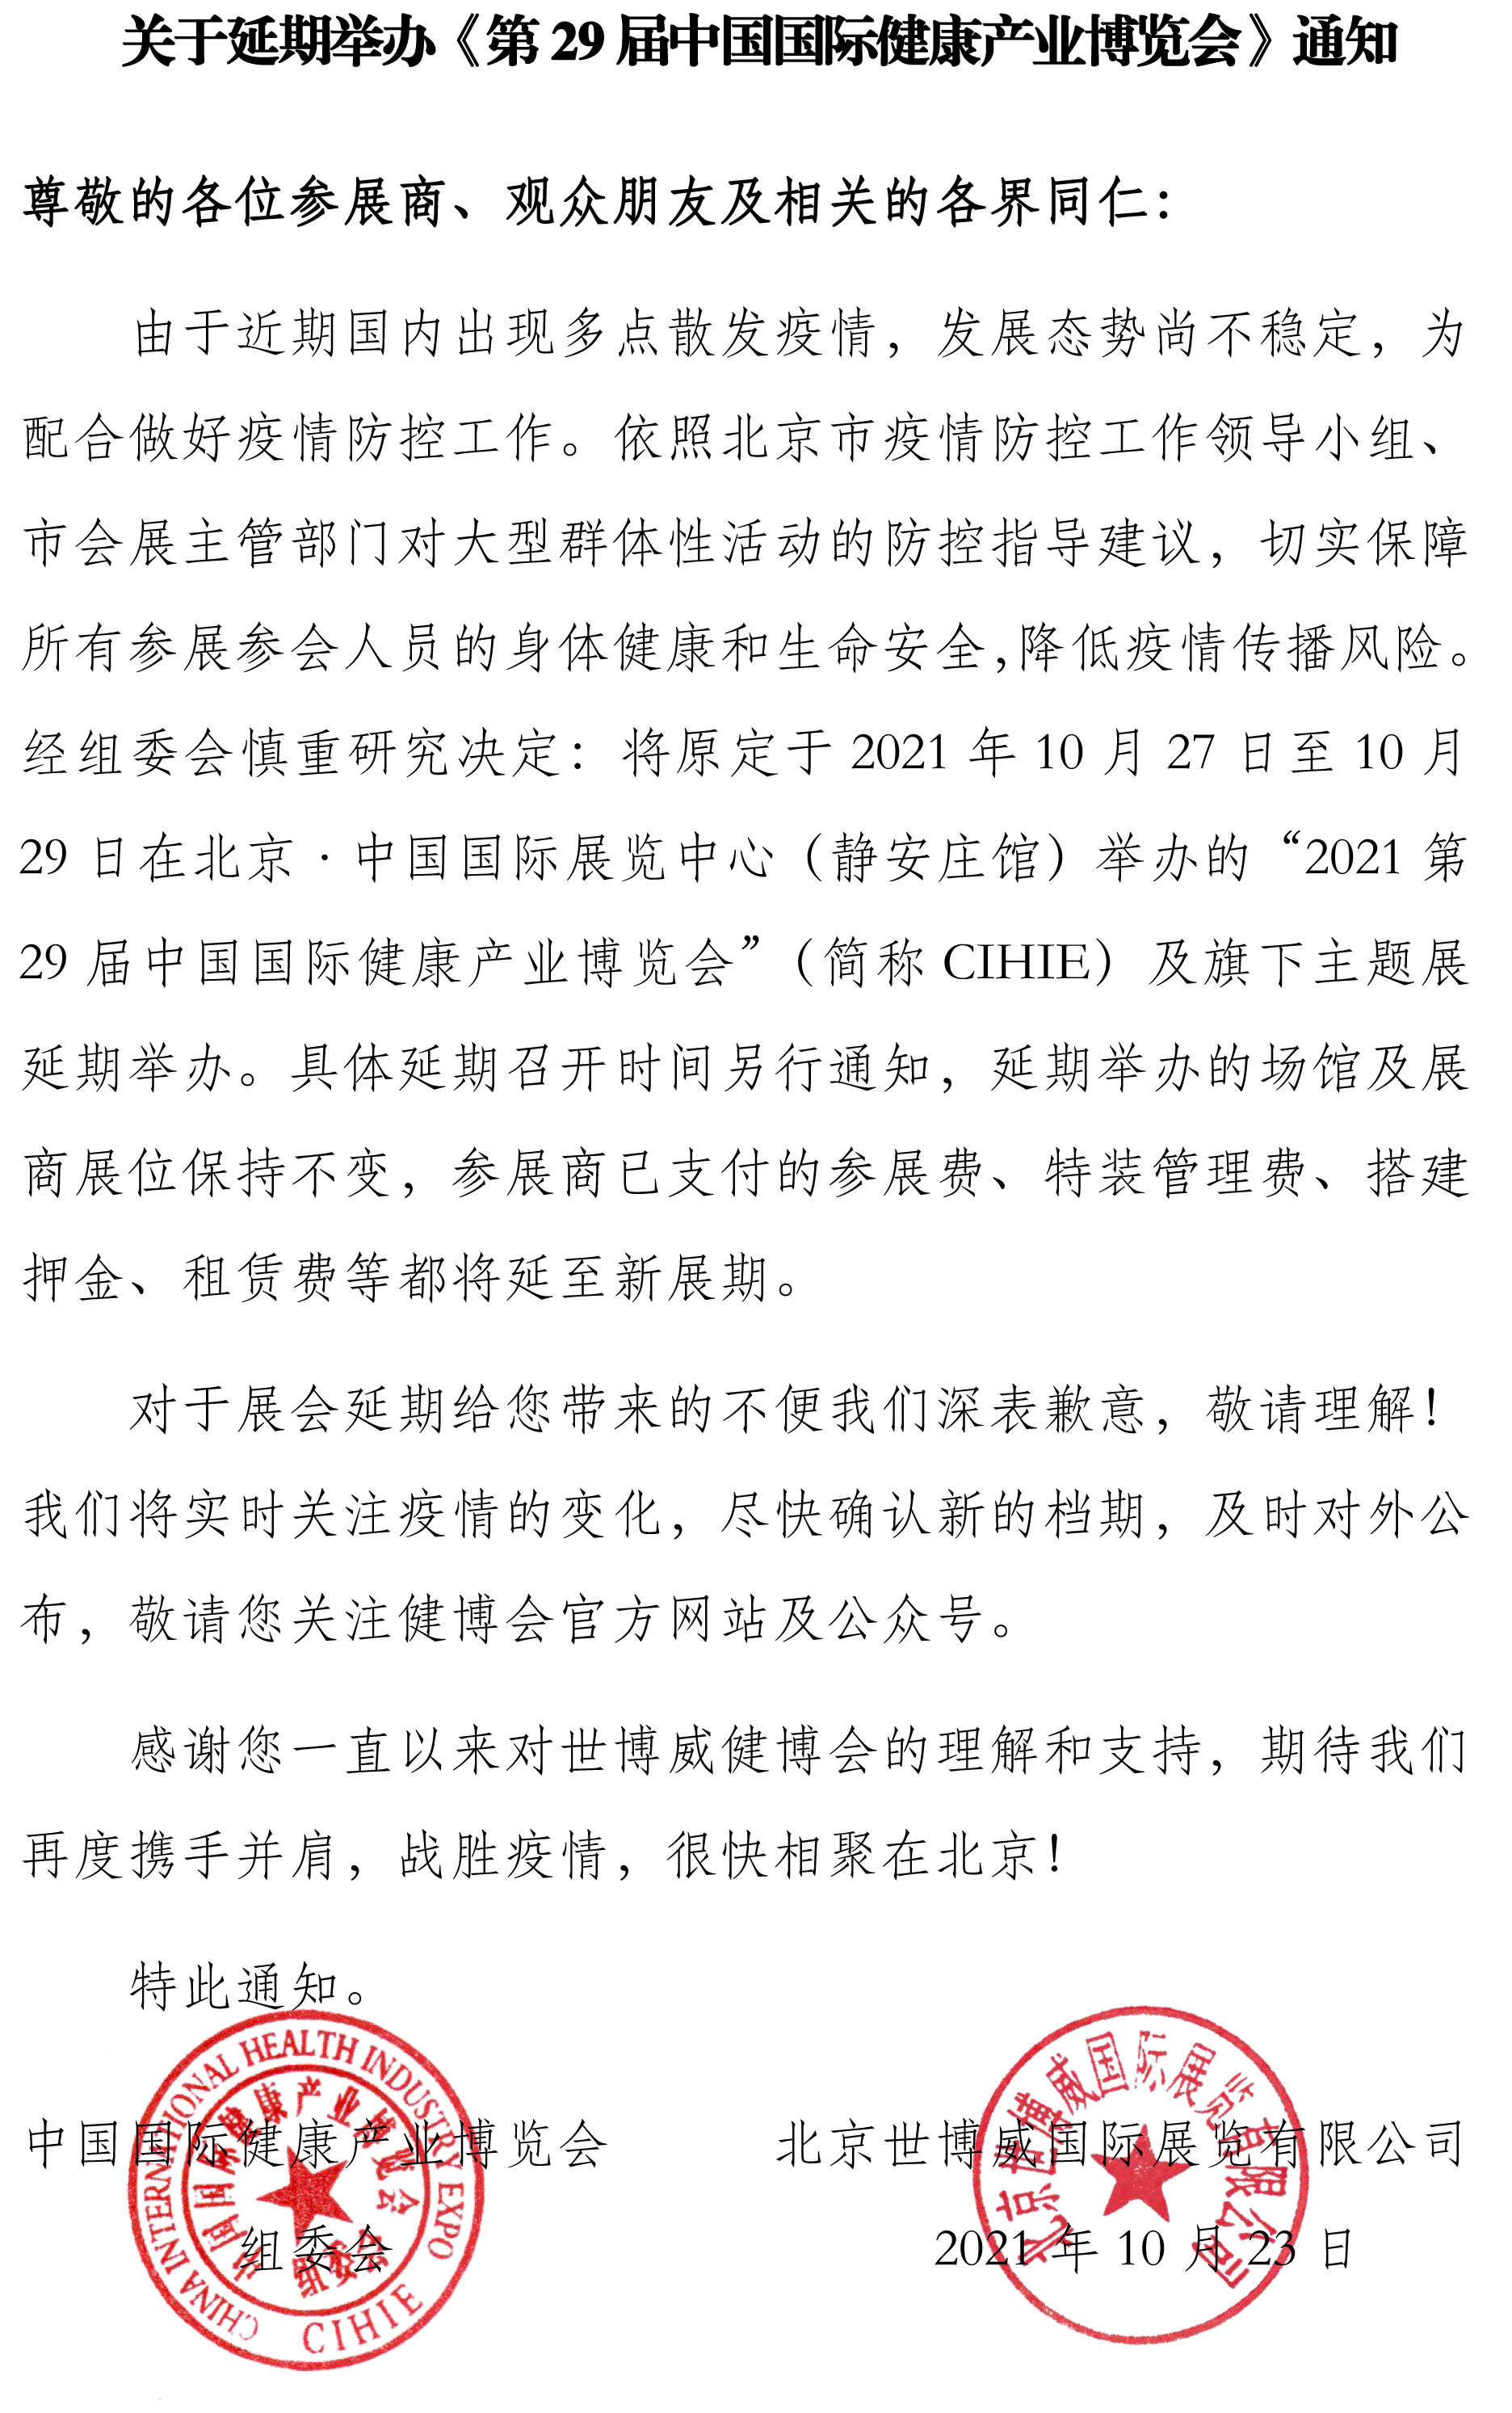 【延期通知】<font color='red'>CIHIE</font> 第29届中国国际健康产业博览会延期举办